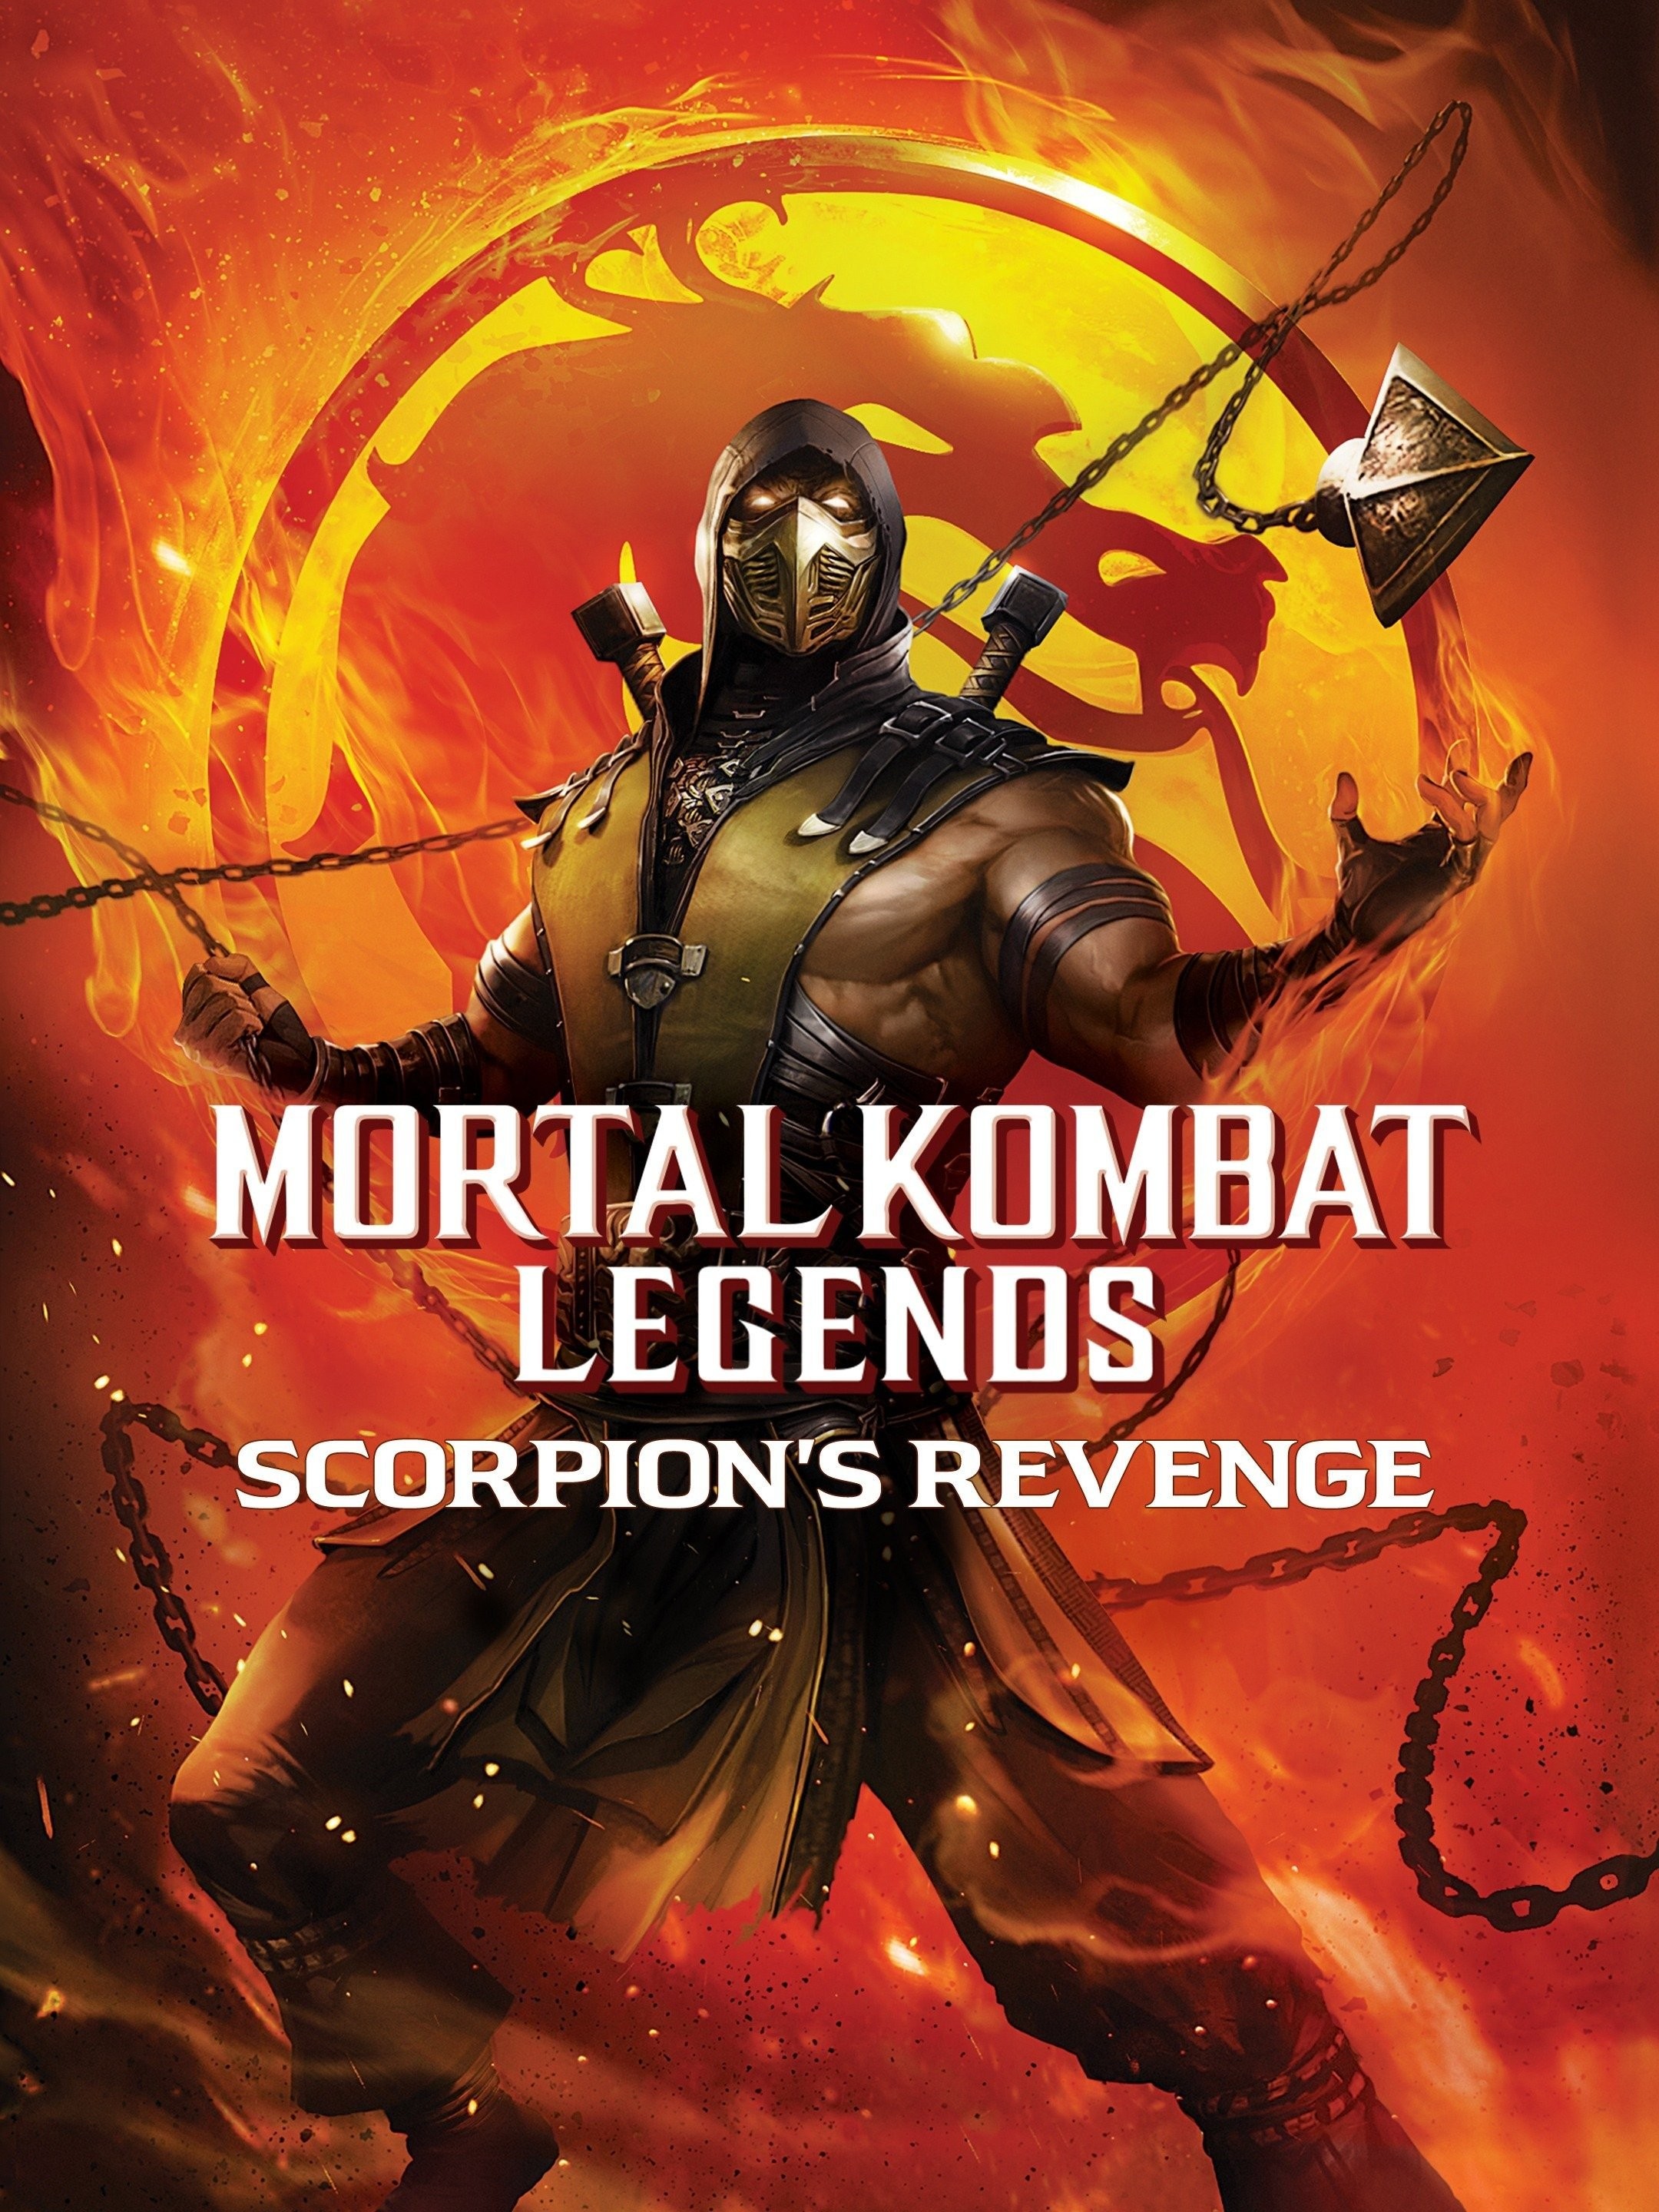 Mortal Kombat': First Official Trailer Shows Off Brutal Action